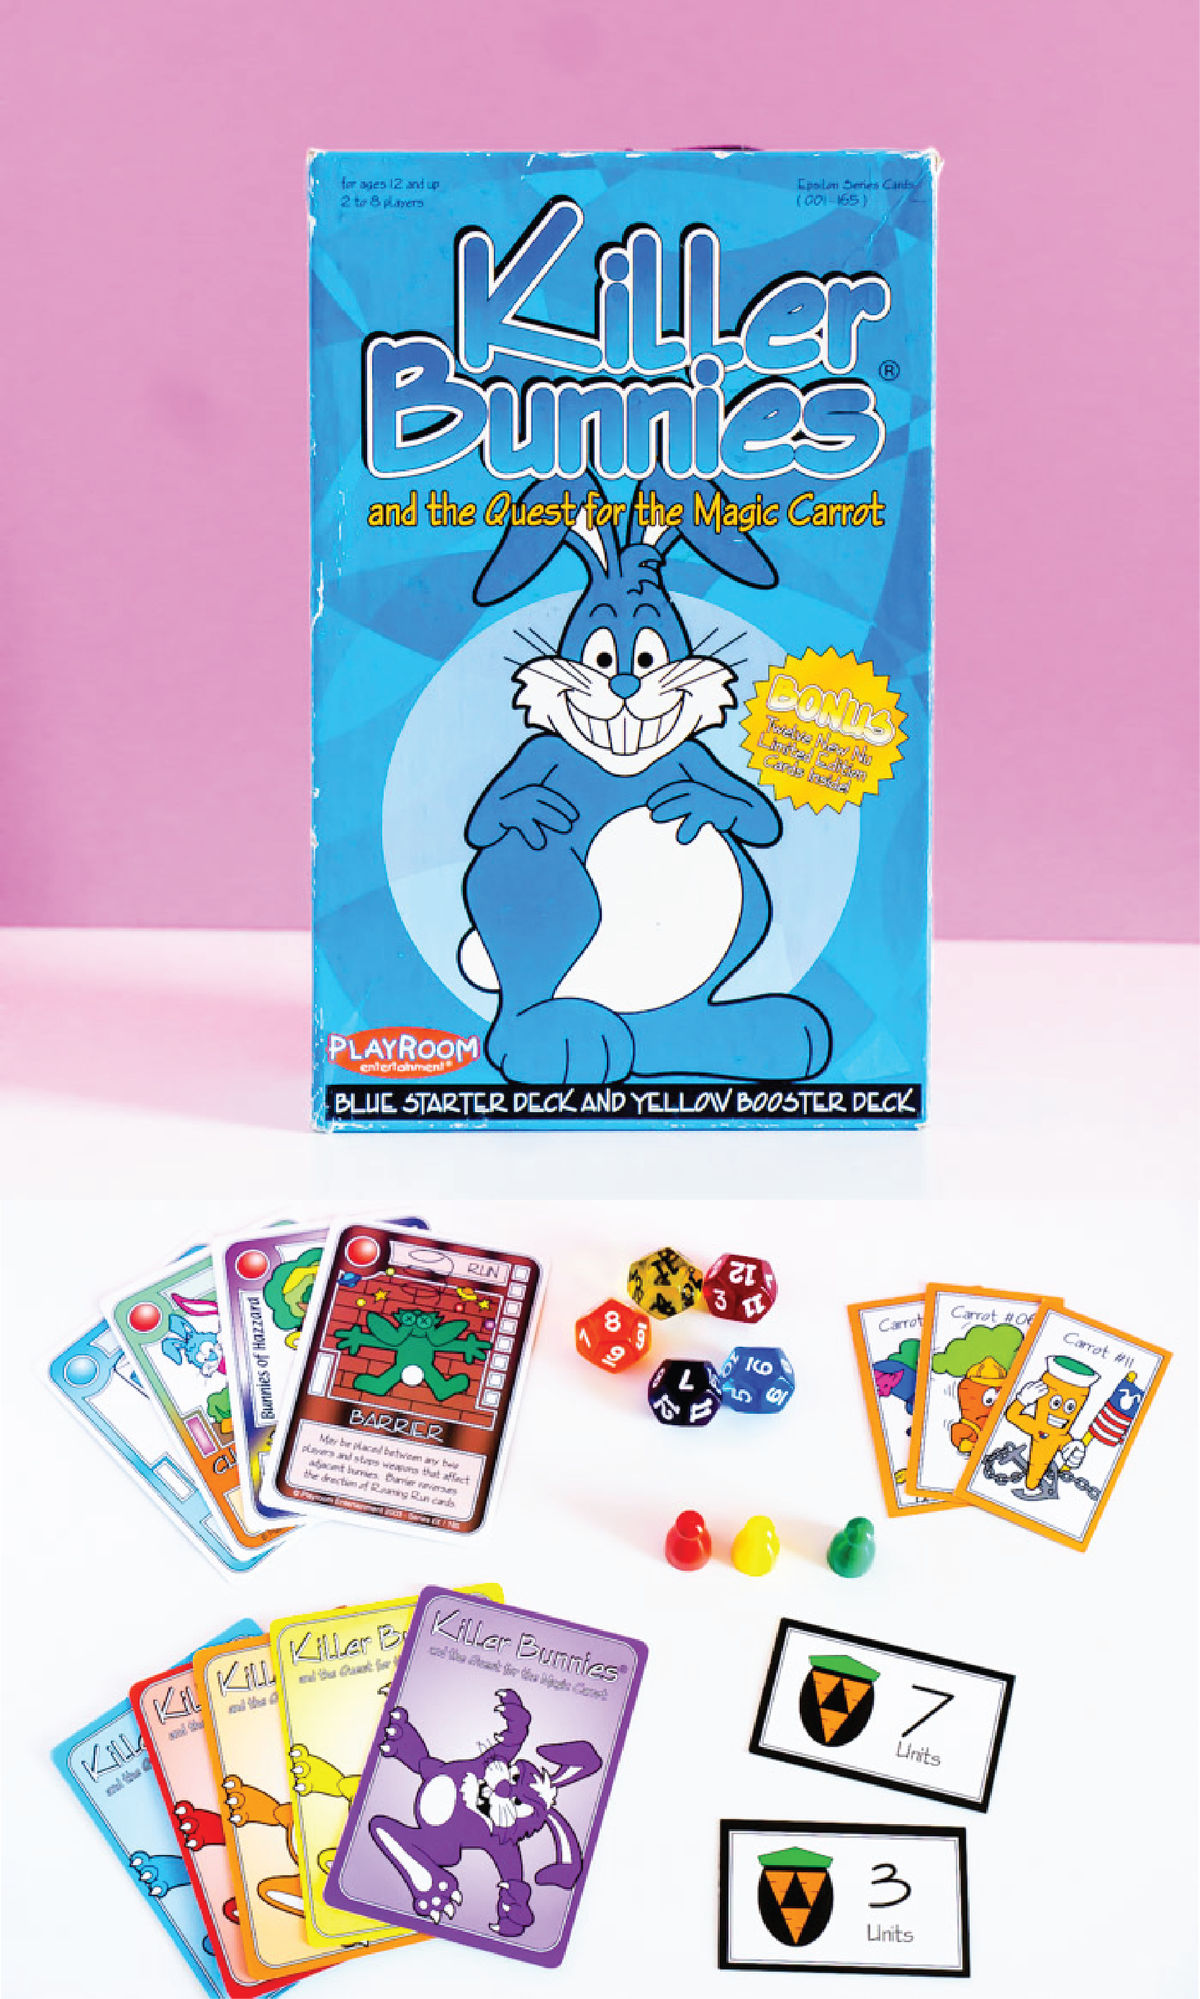 Το Killer Bunnies είναι ένα από τα πιο διασκεδαστικά παιχνίδια καρτών για ενήλικες